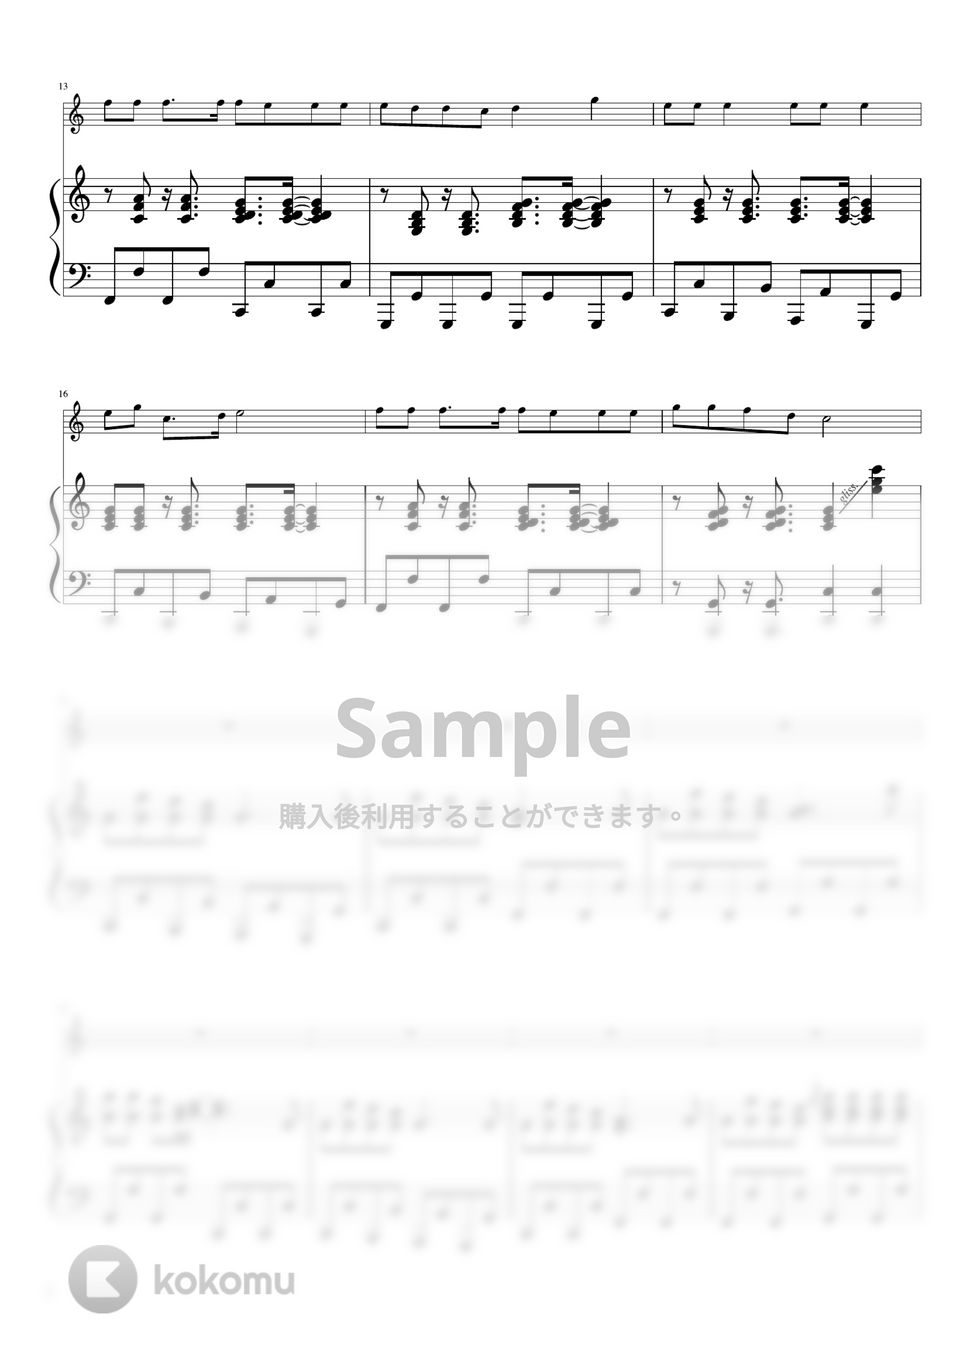 ジングルベル (C・ピアノ＆バイオリン) by pfkaori